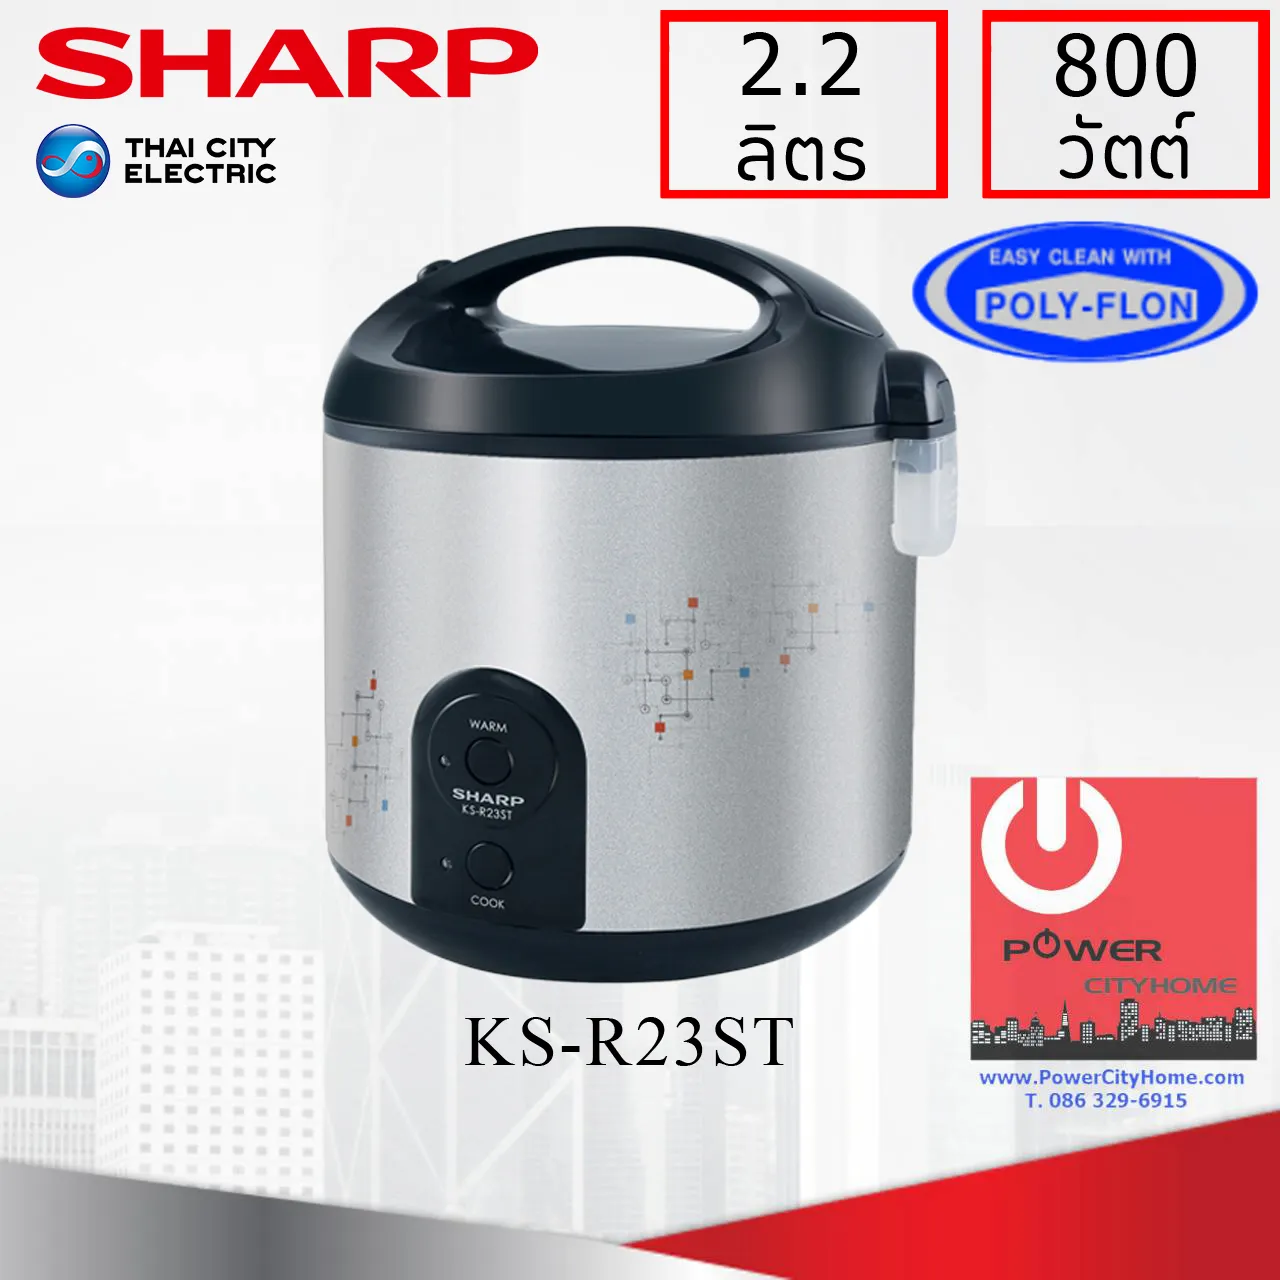 หม้อหุงข้าว Sharp รุ่น KS-R23ST ความจุ 2.2 ลิตร อุ่นทิพย์ มีซึ้งนึ่ง